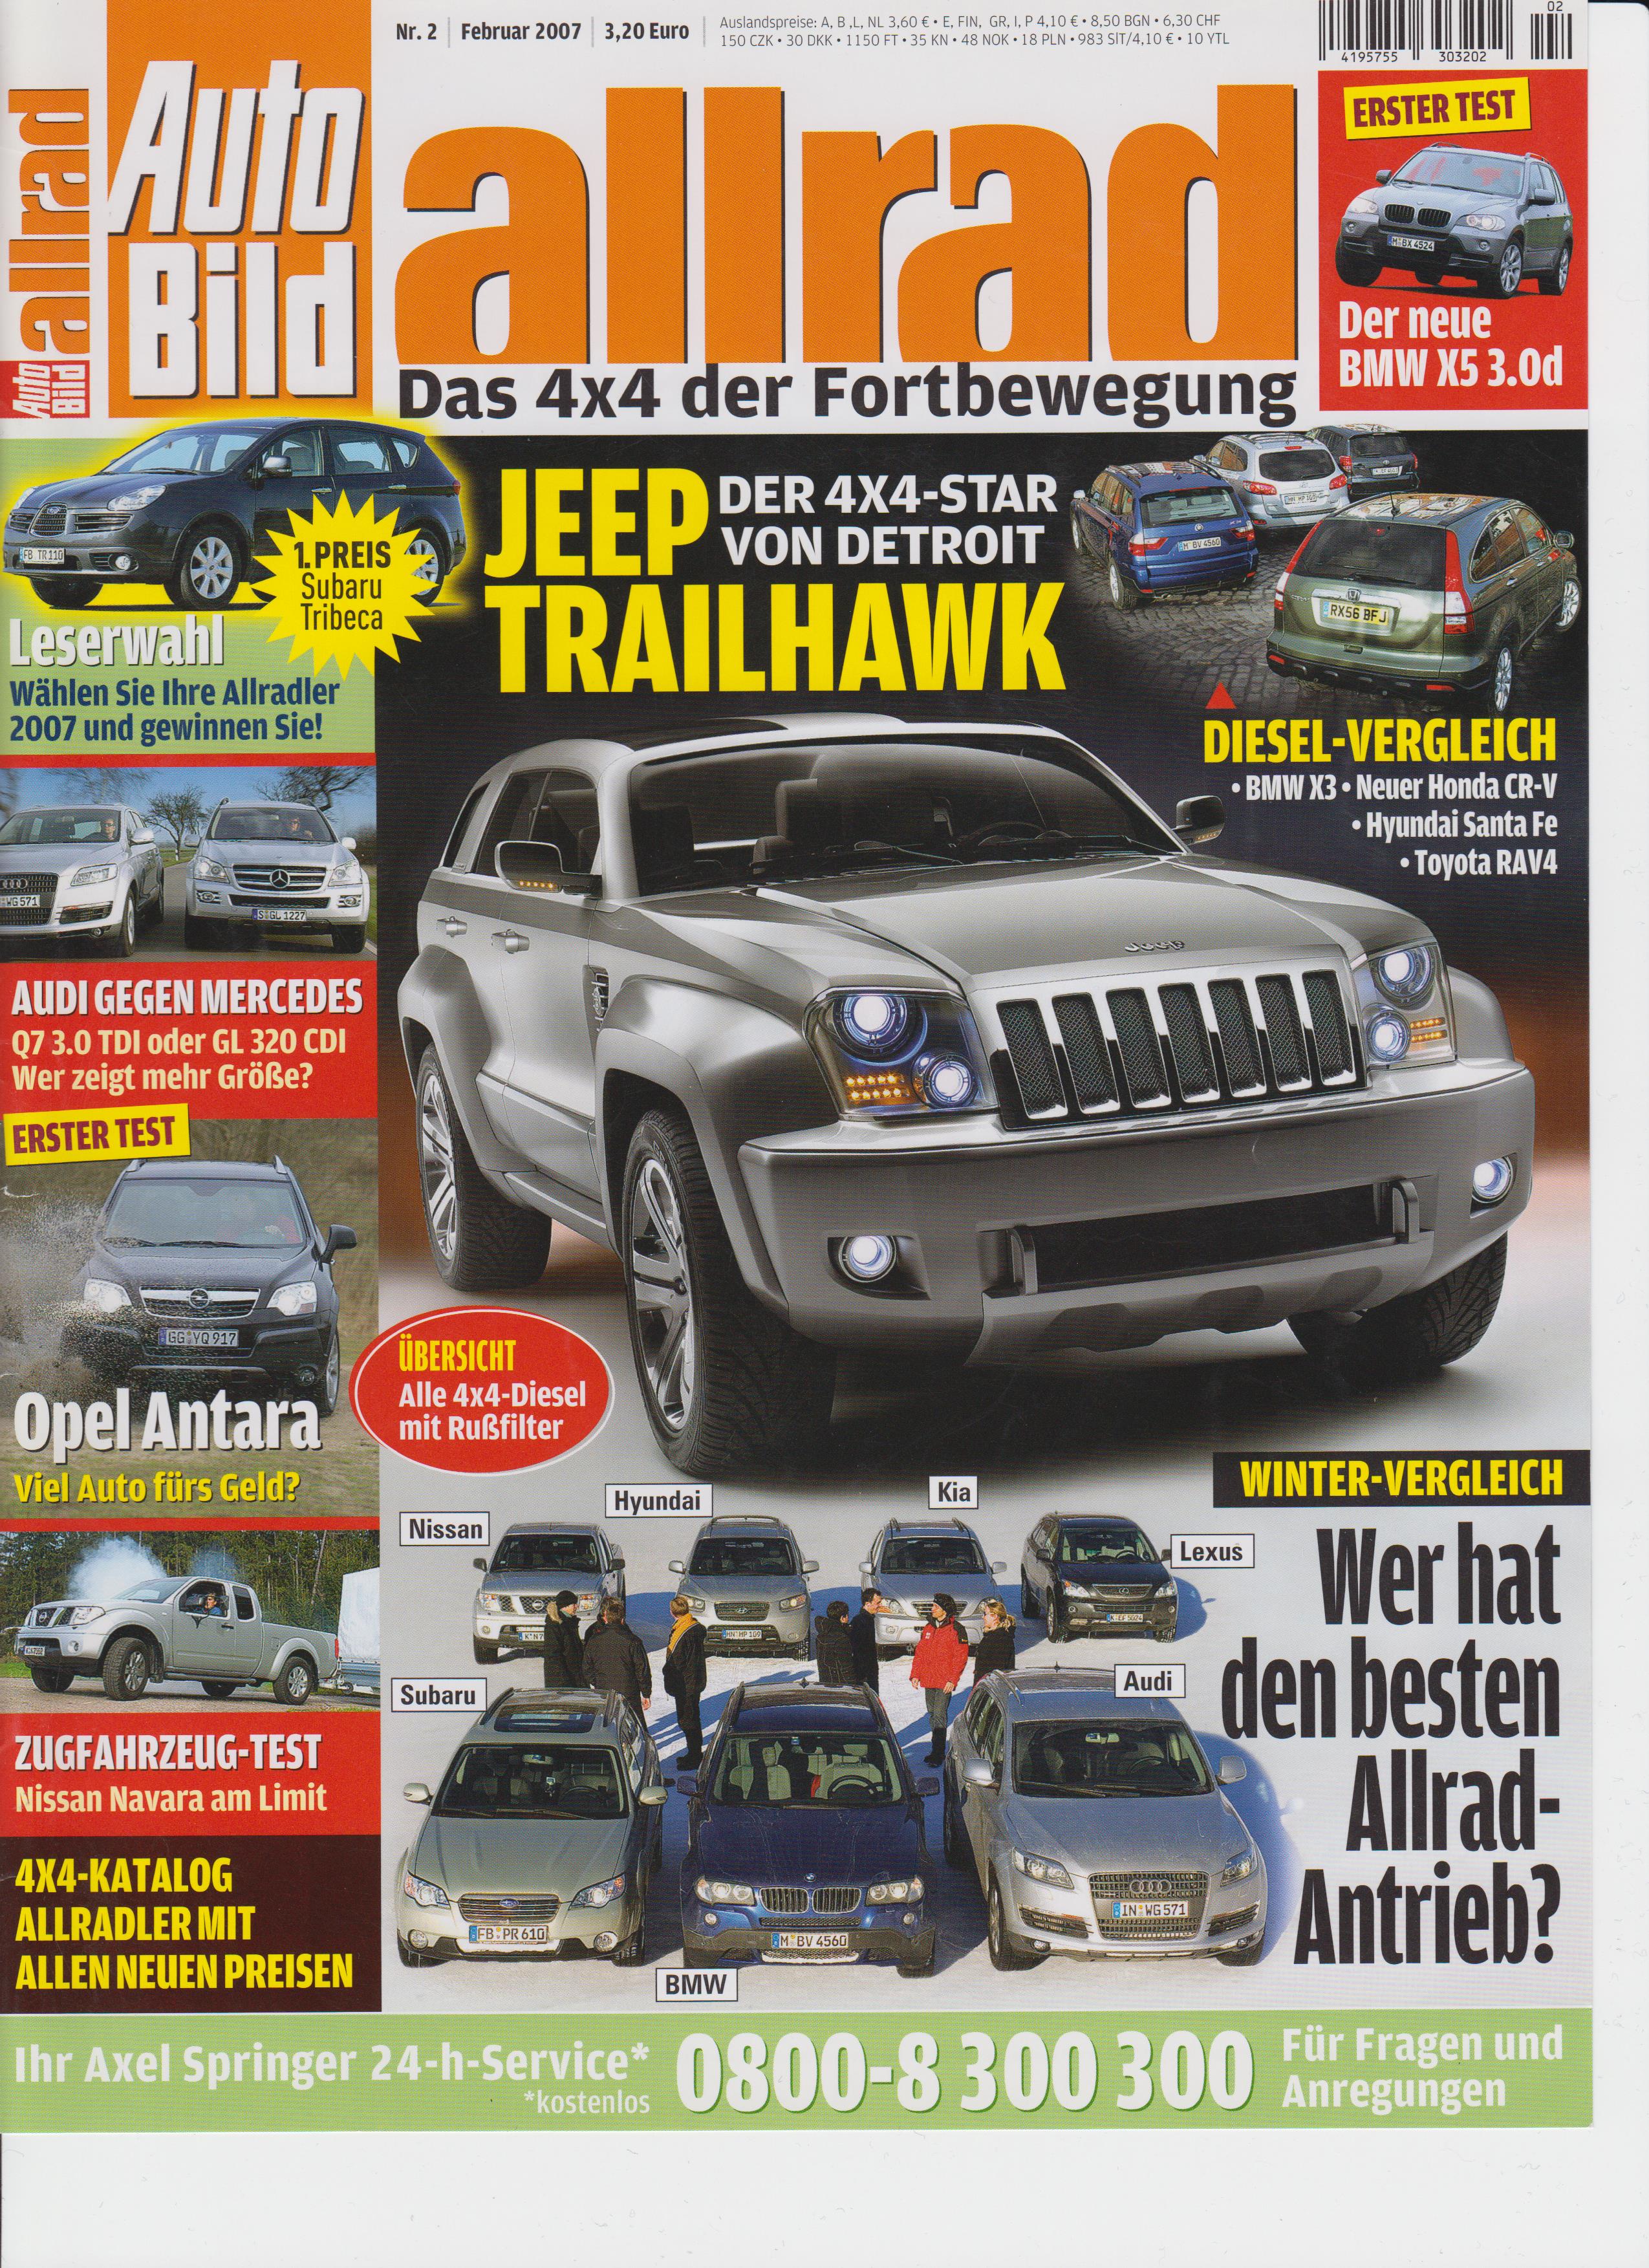 Magazine spécialisé AutoBildAllrad 02 2007